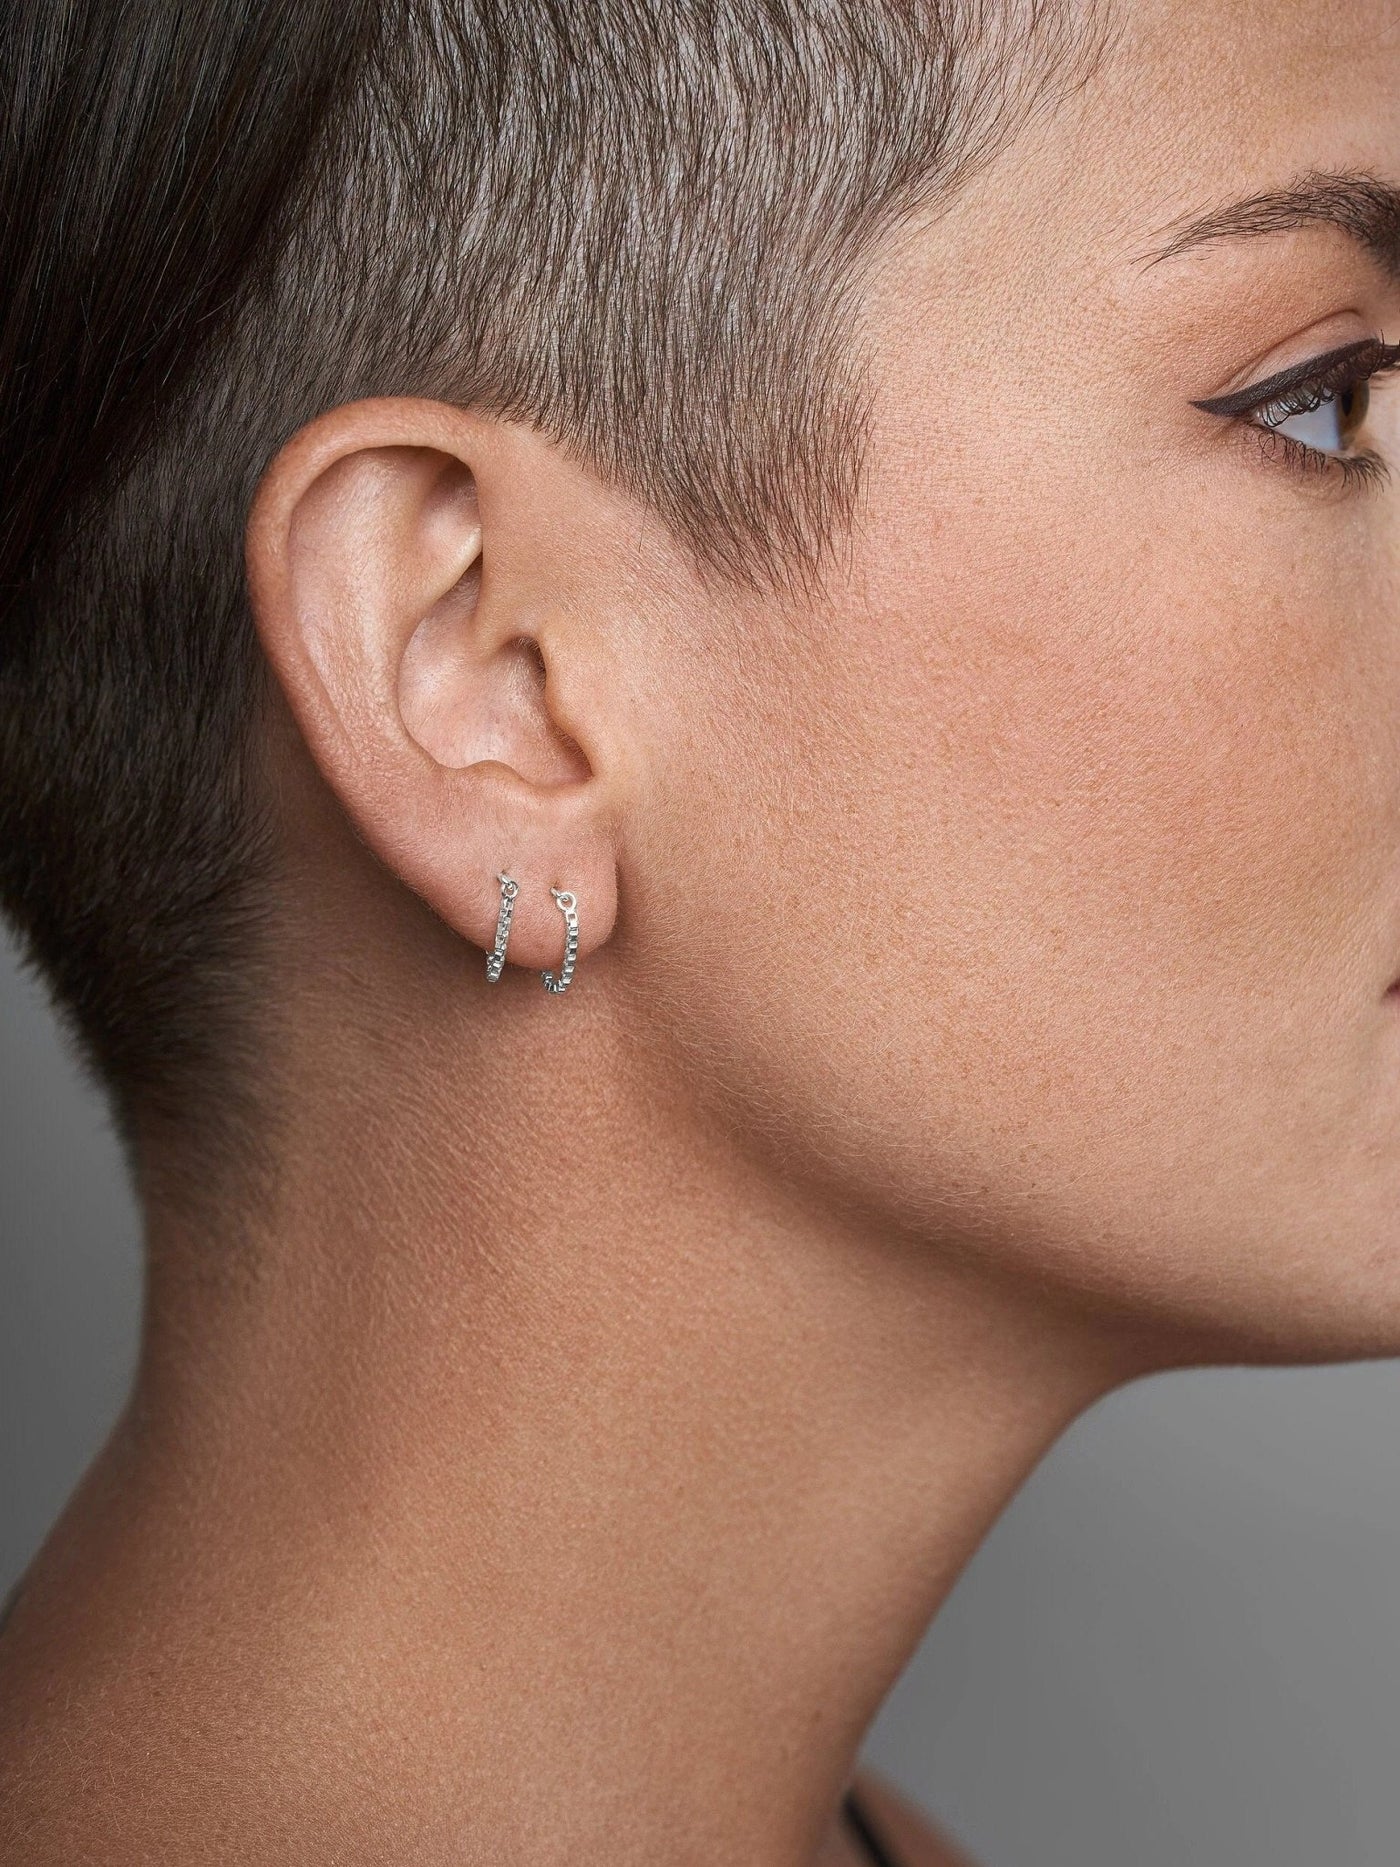 Alisia Ear Threader Earrings - 11925 Sterling SilverBackUpItemsChain Drop EarringsLunai Jewelry